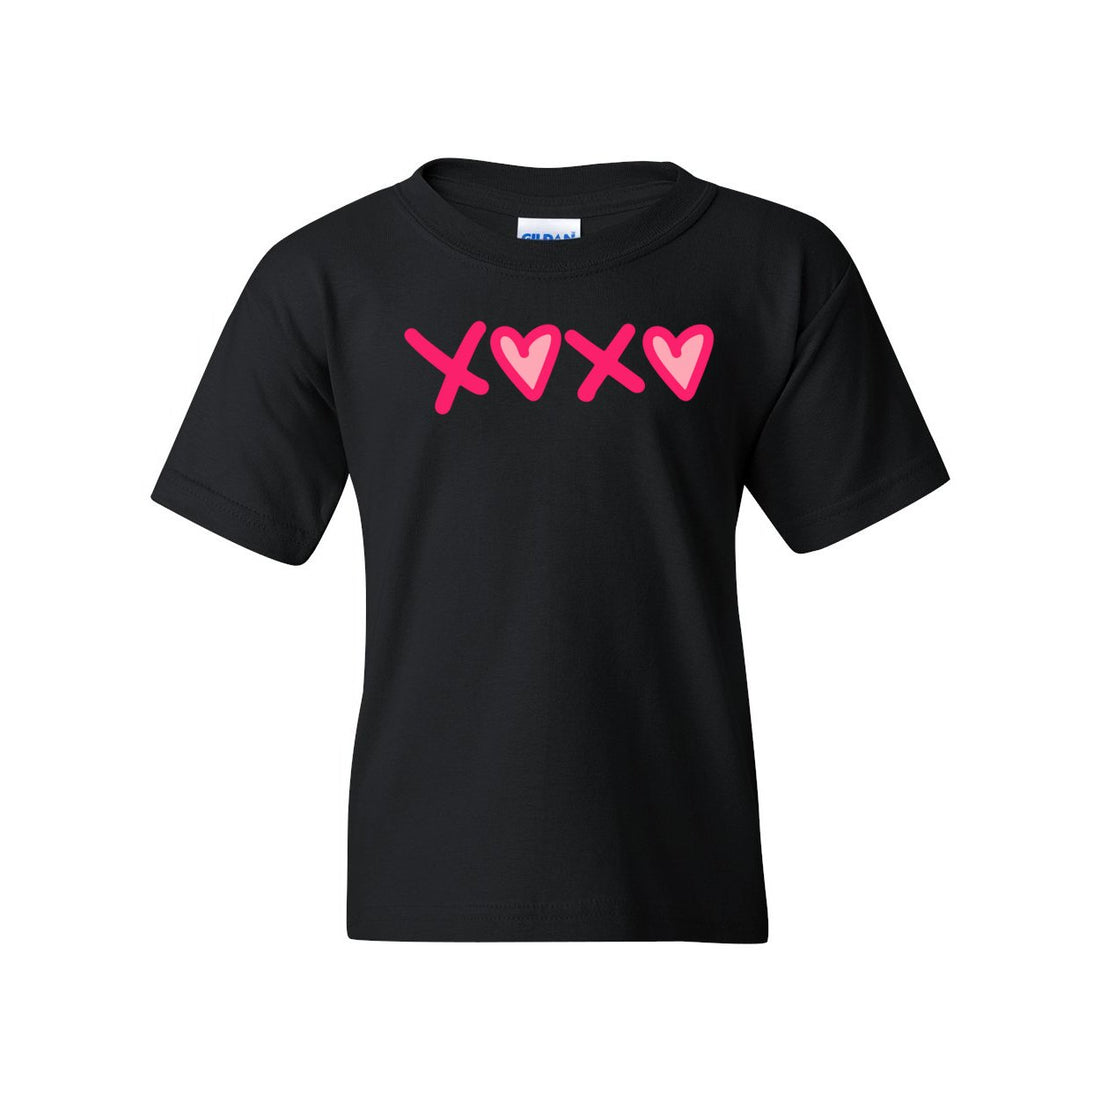 XOXO Heart Love Heavy Cotton™ Youth T-Shirt - T-Shirts - Positively Sassy - XOXO Heart Love Heavy Cotton™ Youth T-Shirt